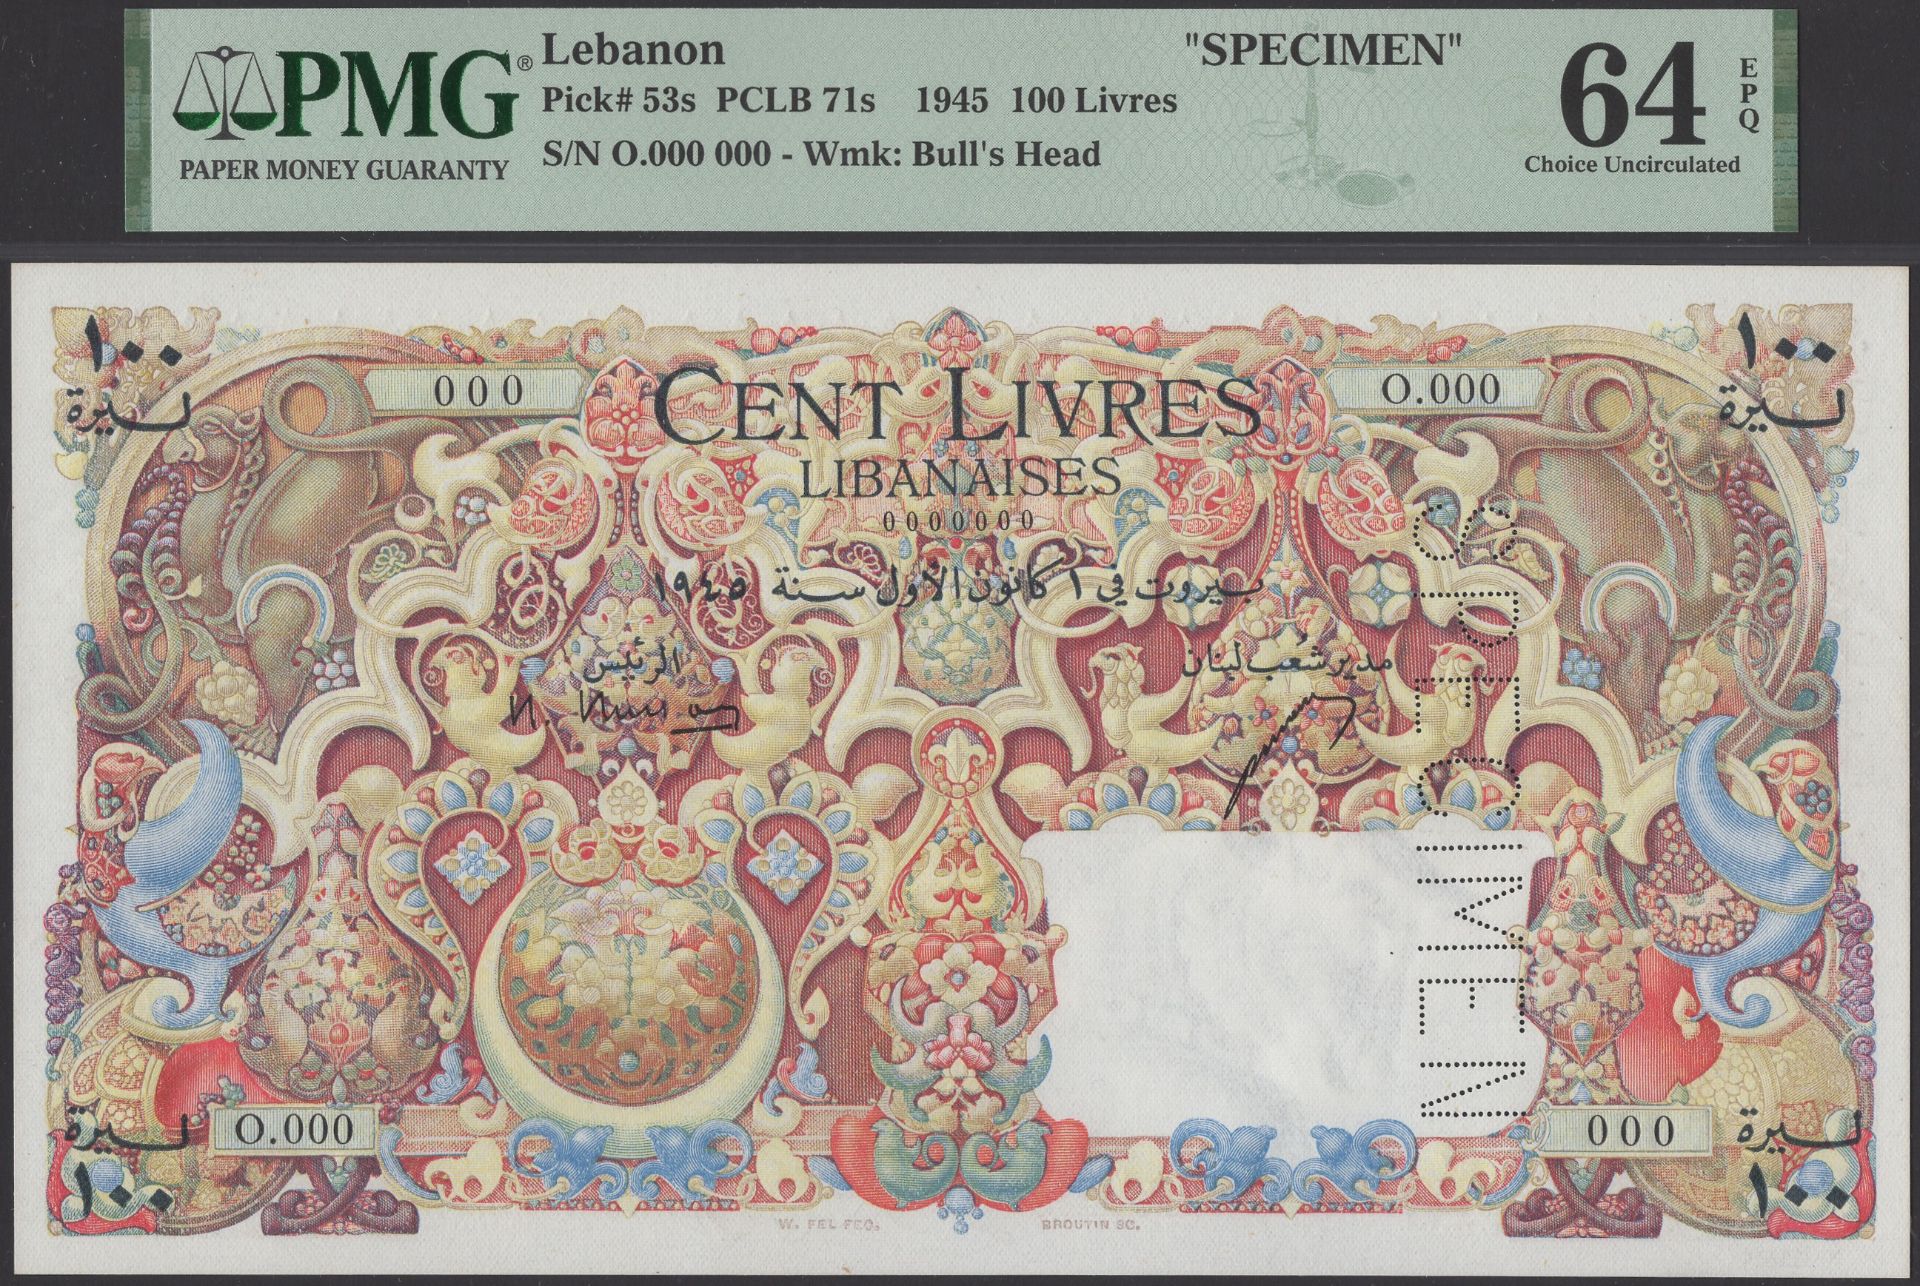 Banque de Syrie et du Liban, Lebanon, specimen 100 Livres, 1 December 1945, serial number 0....